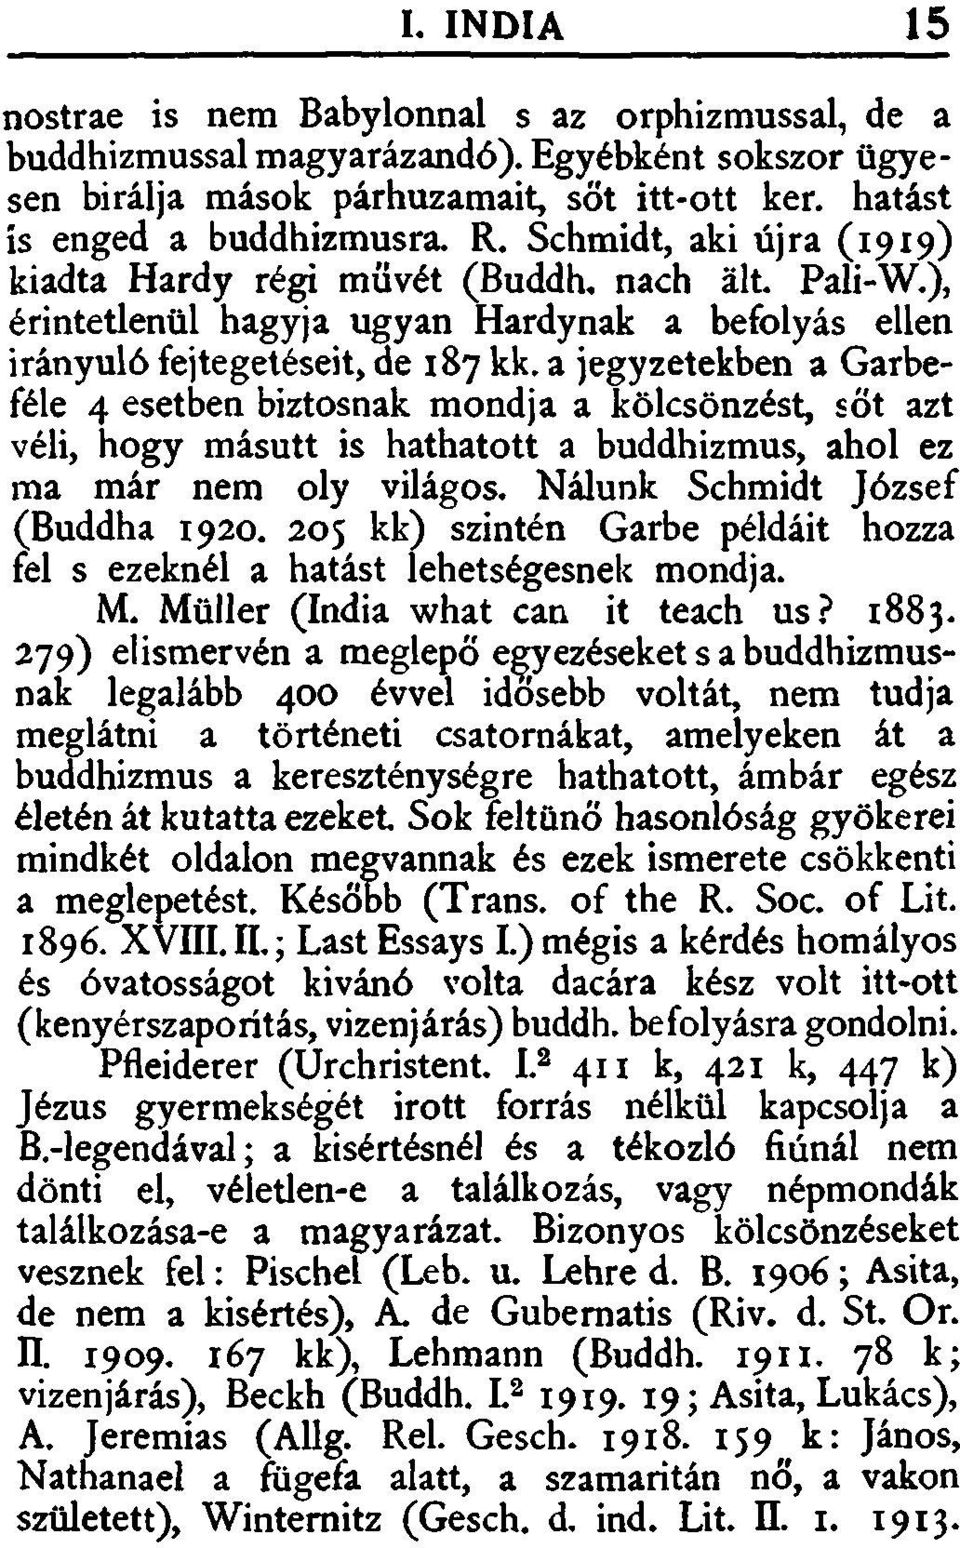 a jegyzetekben a Garbeféle 4 esetben biztosnak mondja a kölcsönzést, sőt azt véli, hogy másutt is hathatott a buddhizmus, ahol ez ma már nem oly világos. Nálunk Schmidt József (Buddha 1920.